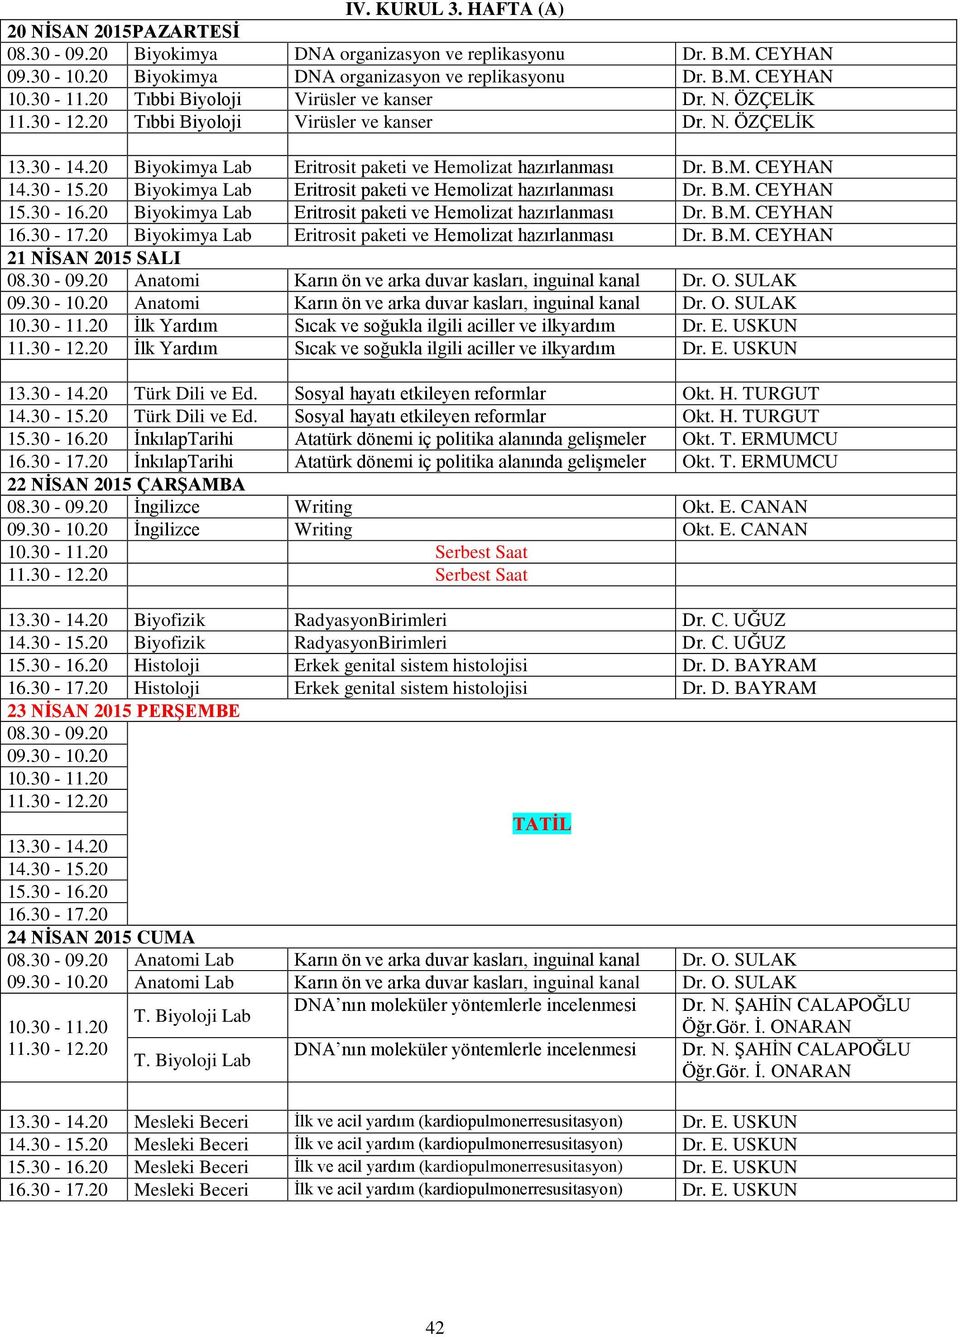 20 Biyokimya Lab Eritrosit paketi ve Hemolizat hazırlanması Dr. B.M. CEYHAN 15.30-16.20 Biyokimya Lab Eritrosit paketi ve Hemolizat hazırlanması Dr. B.M. CEYHAN 16.30-17.